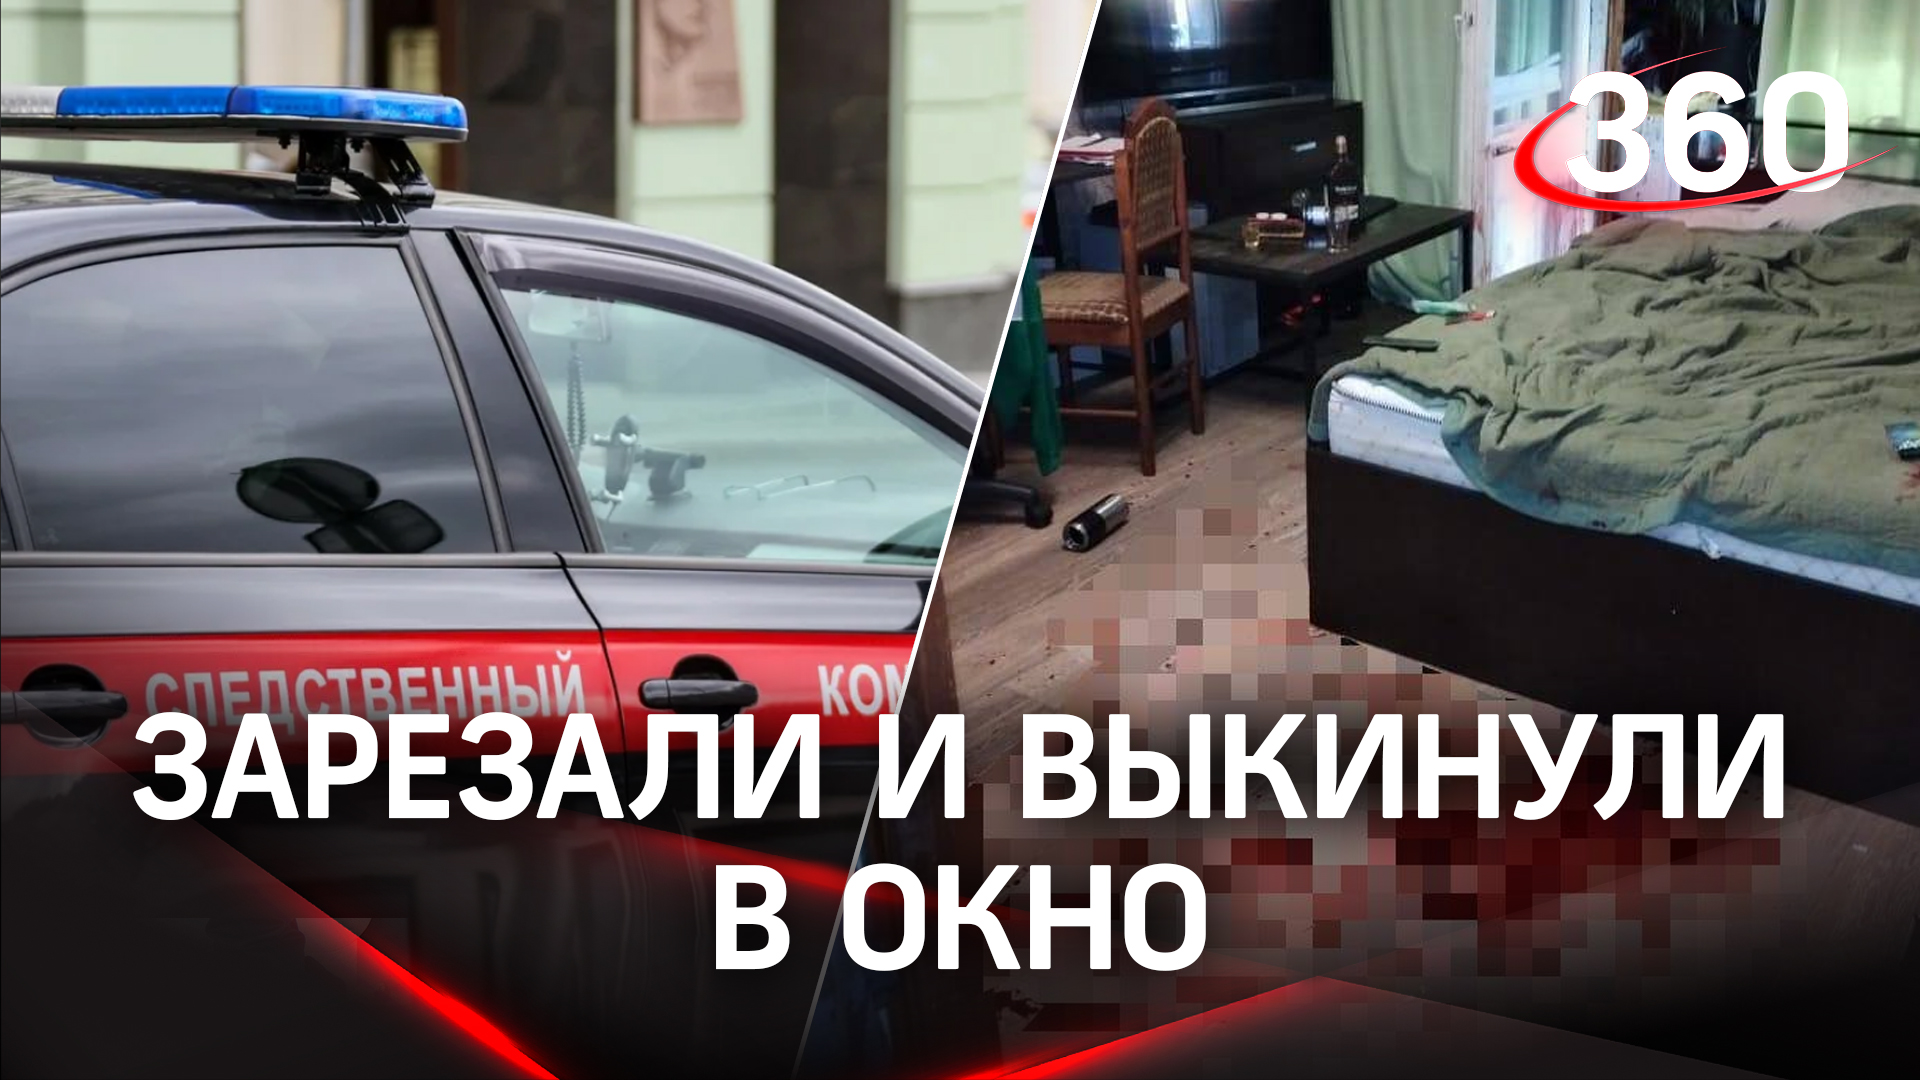 Попойка закончилась 11 ножевыми: тело мужчины нашли под окнами многоэтажки в Москве